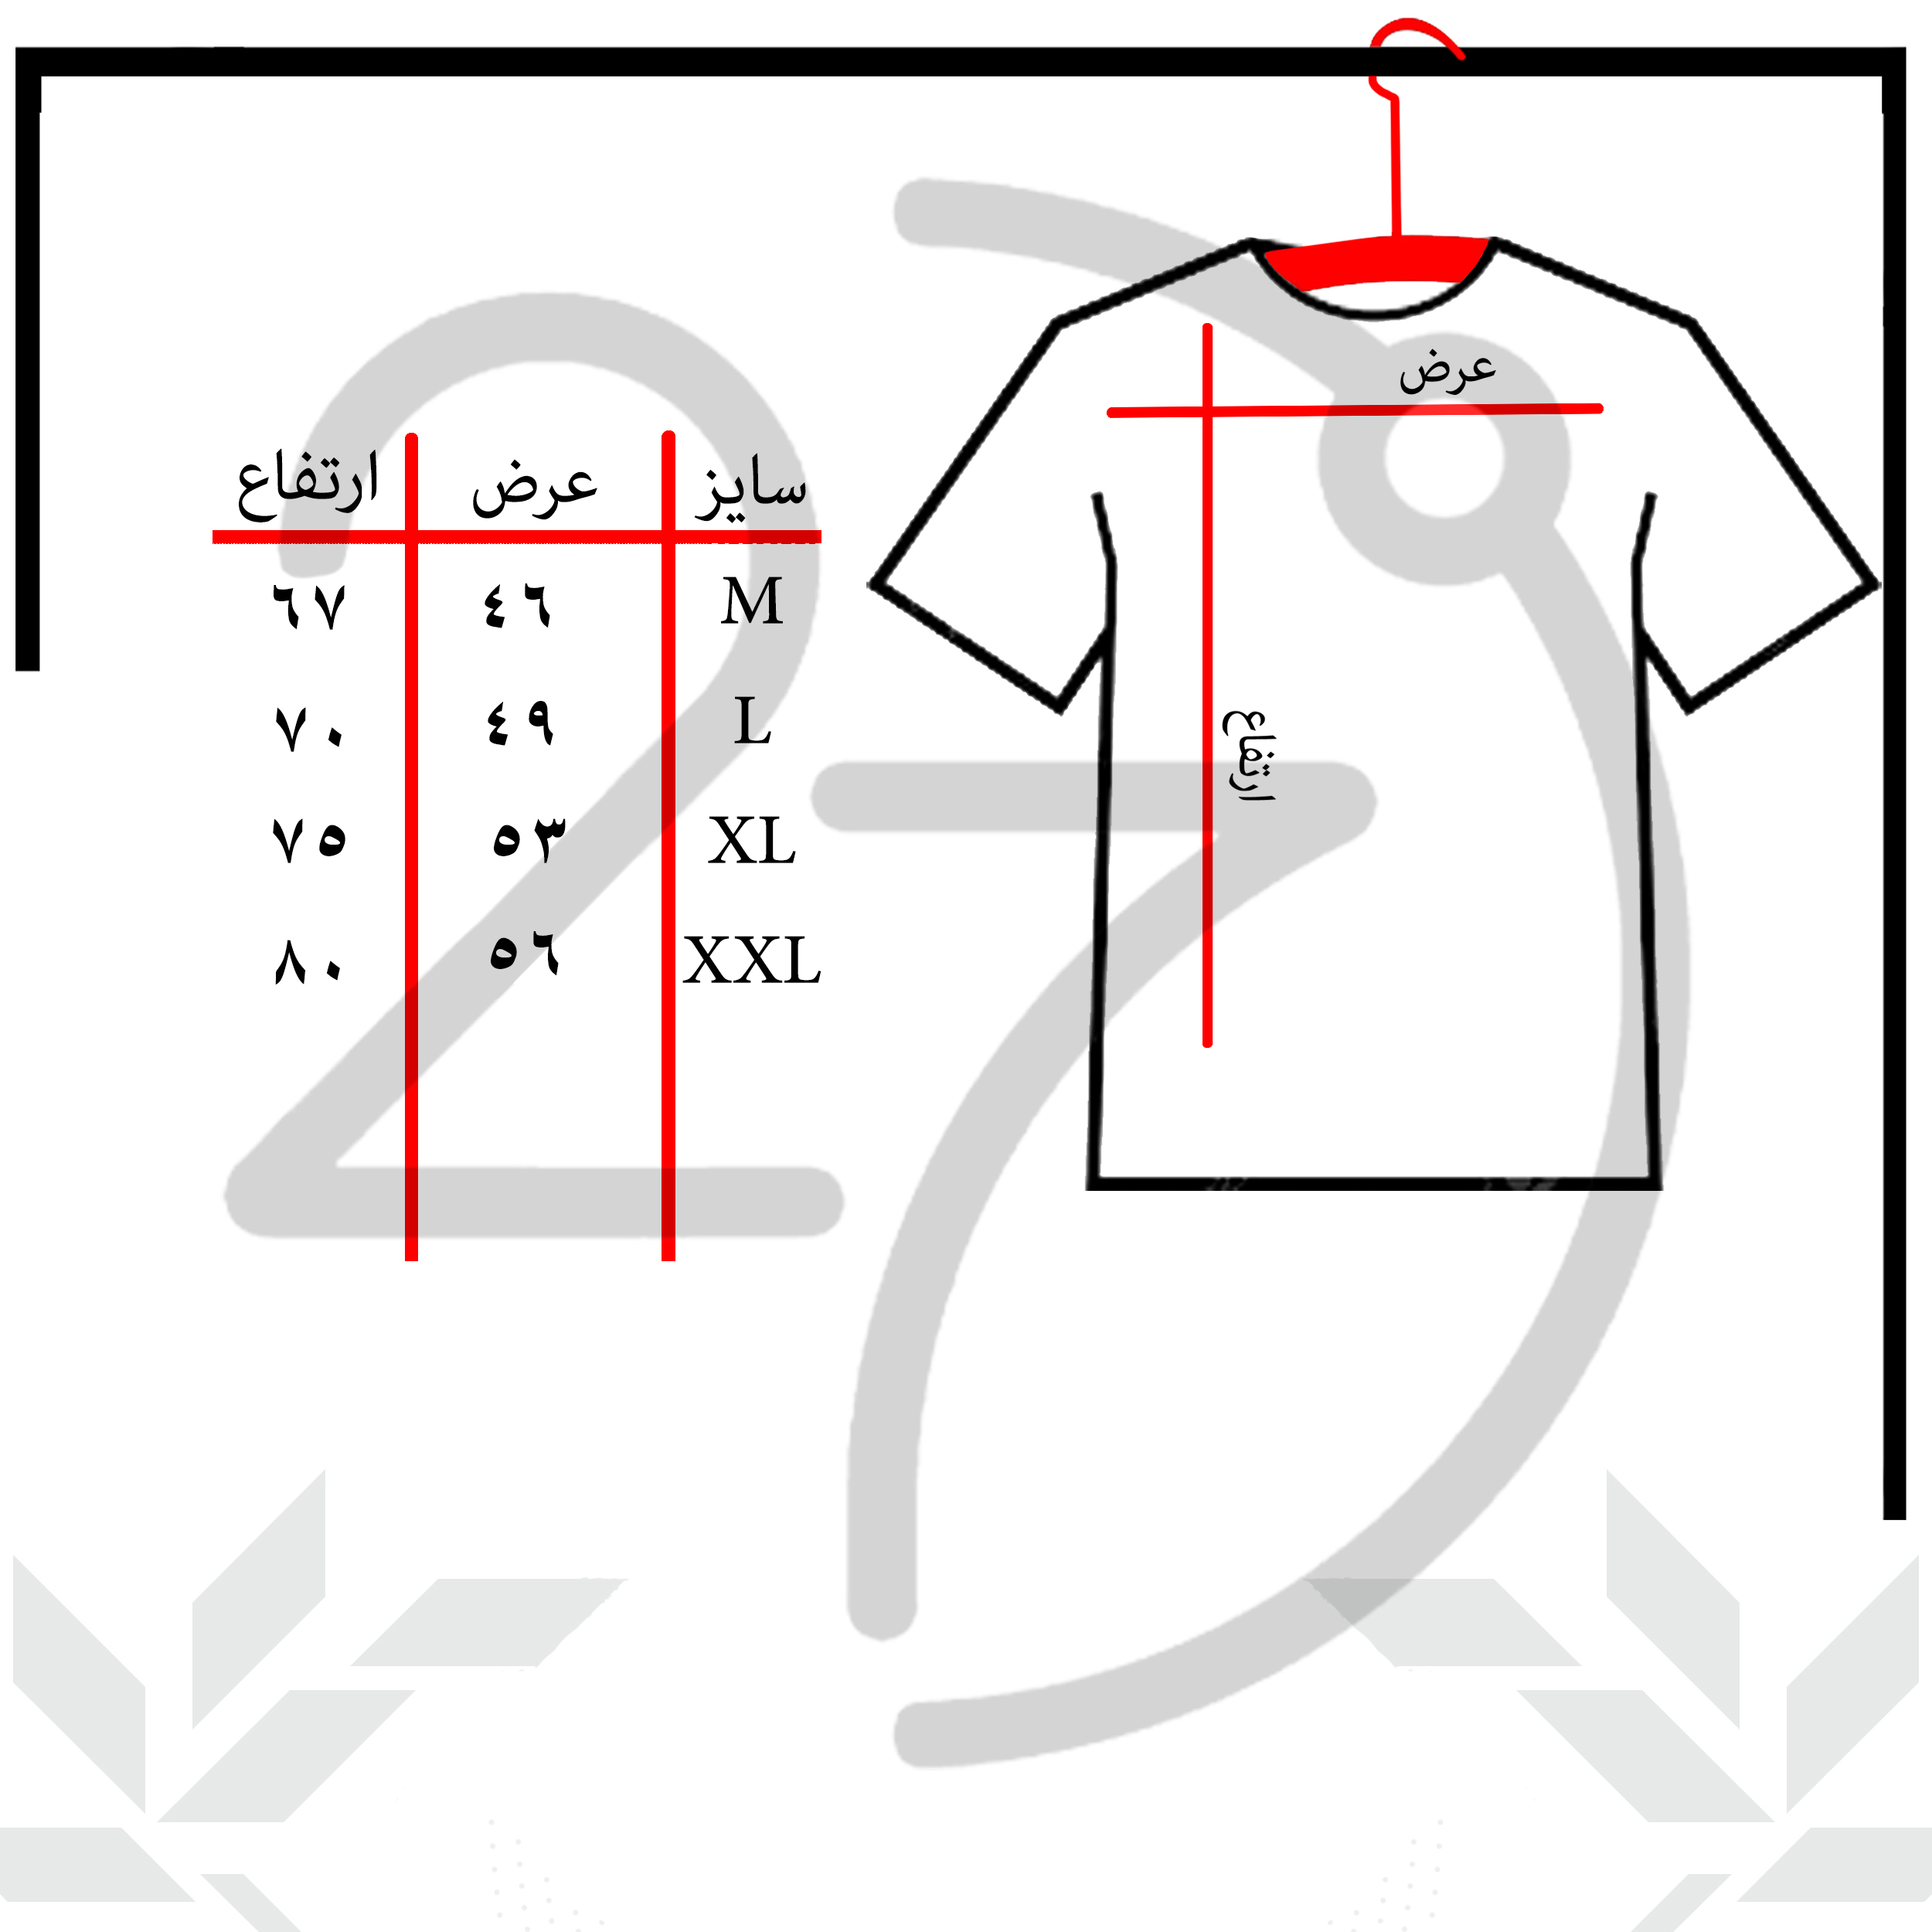 تی شرت آستین کوتاه مردانه 27 مدل نیروانا کد WN1035 -  - 3